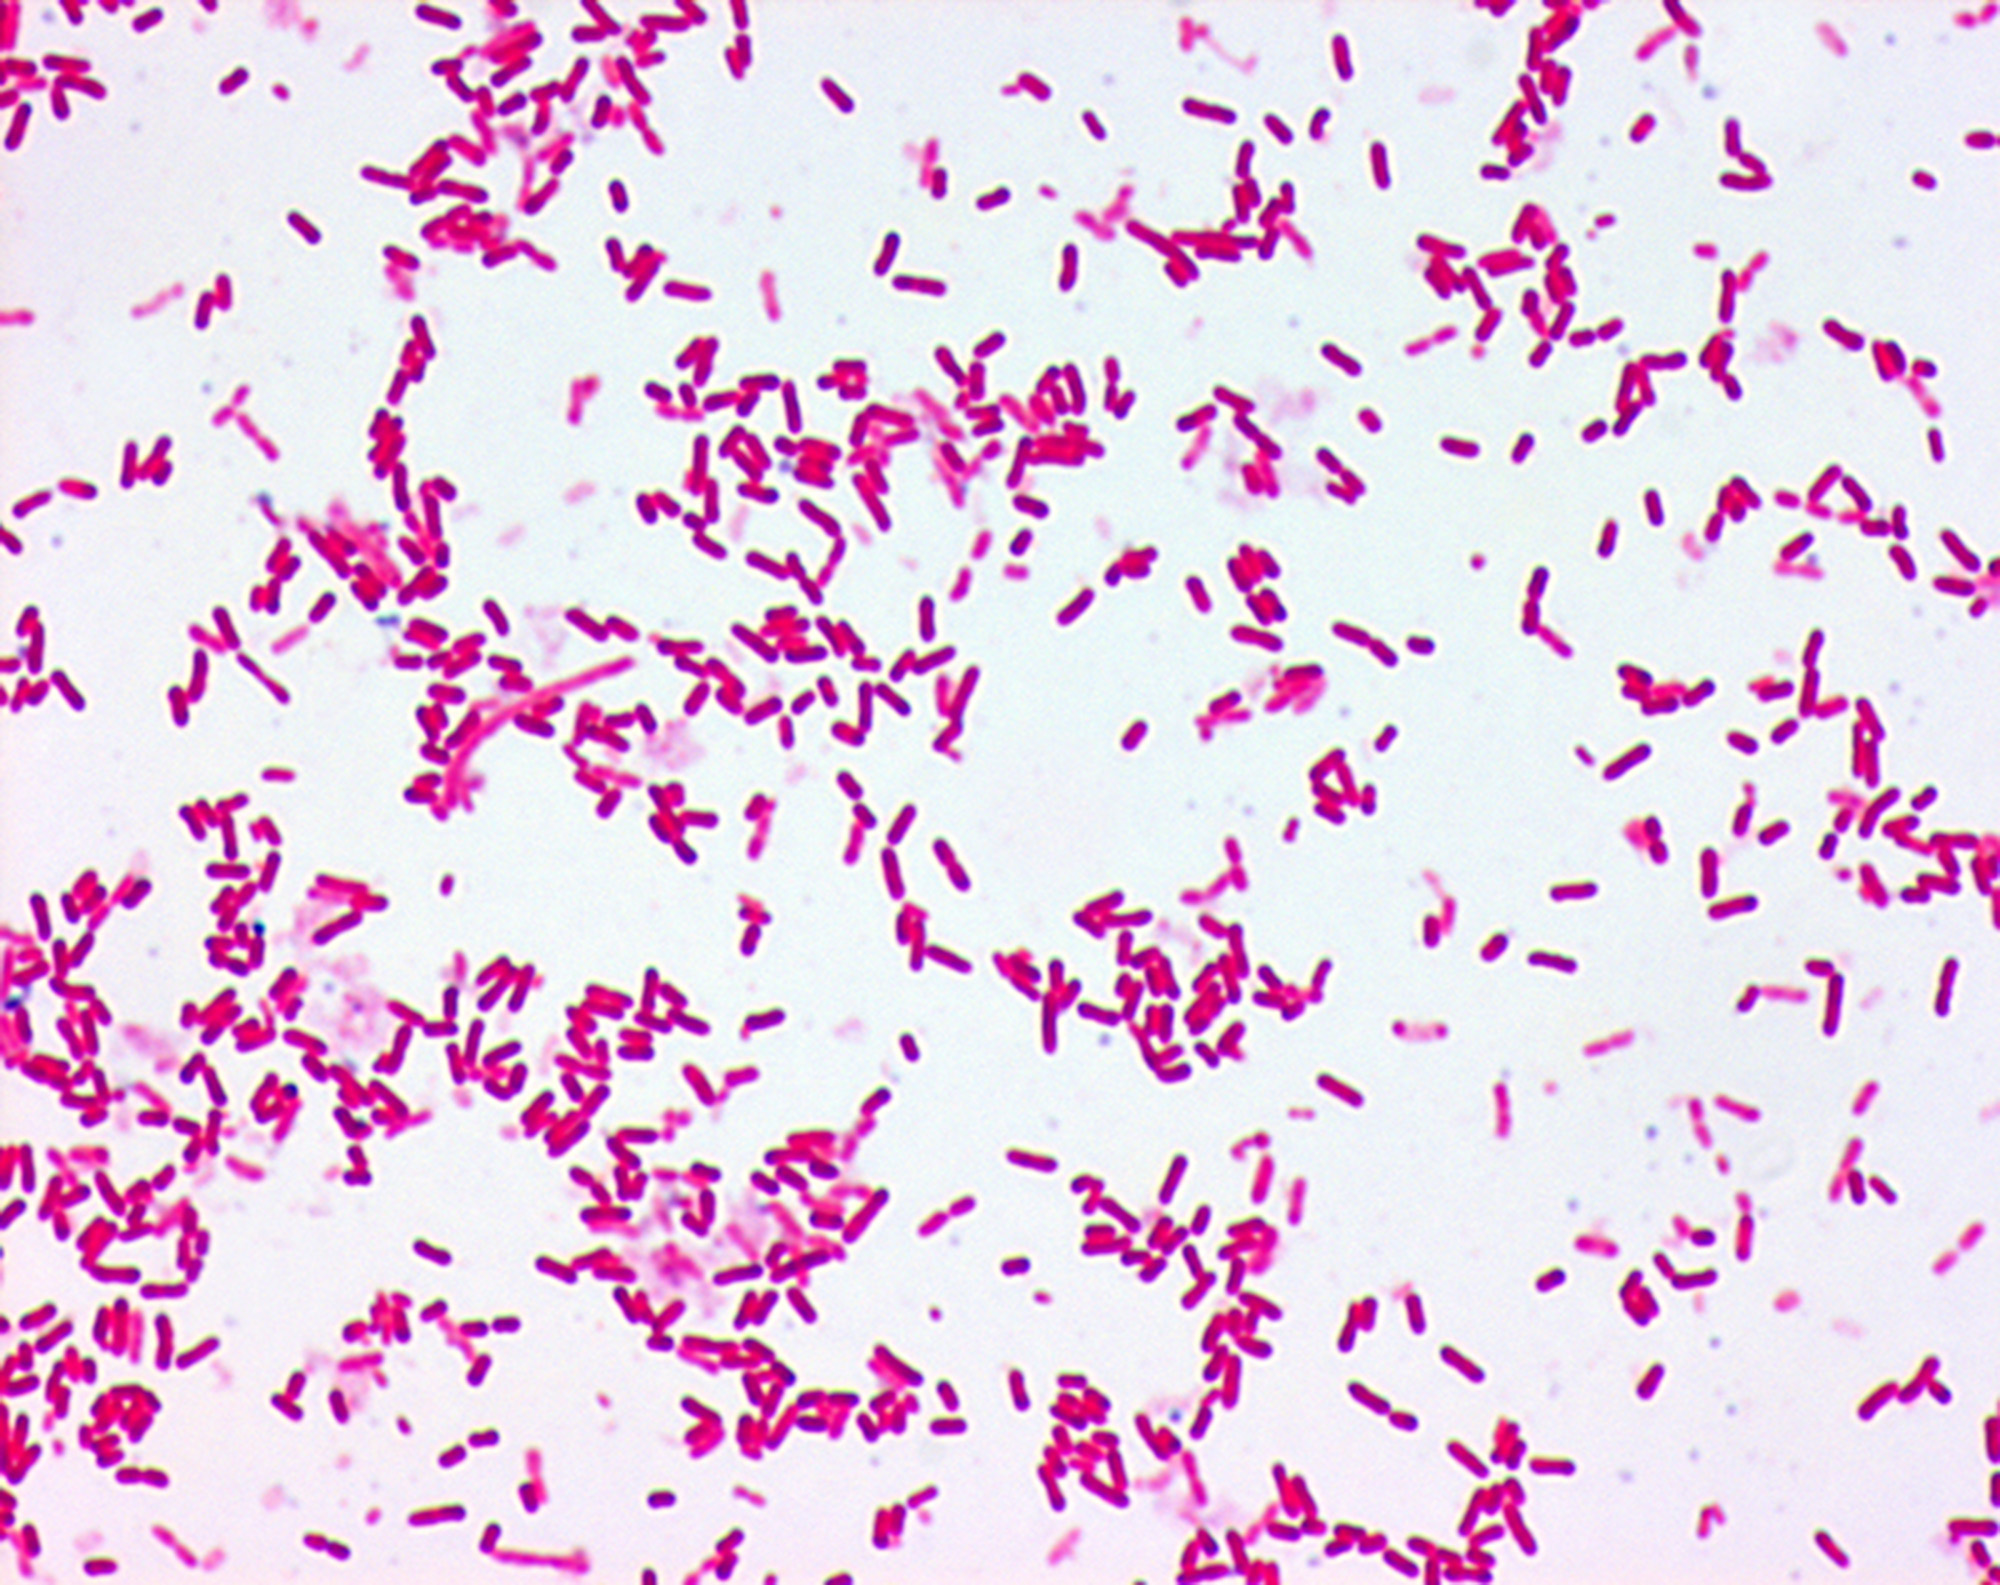 Бактерия spp. Pantoea agglomerans. Энтеробактер аэрогенес. Бактерии рода Pantoea. Энтеробактерии агломеранс.